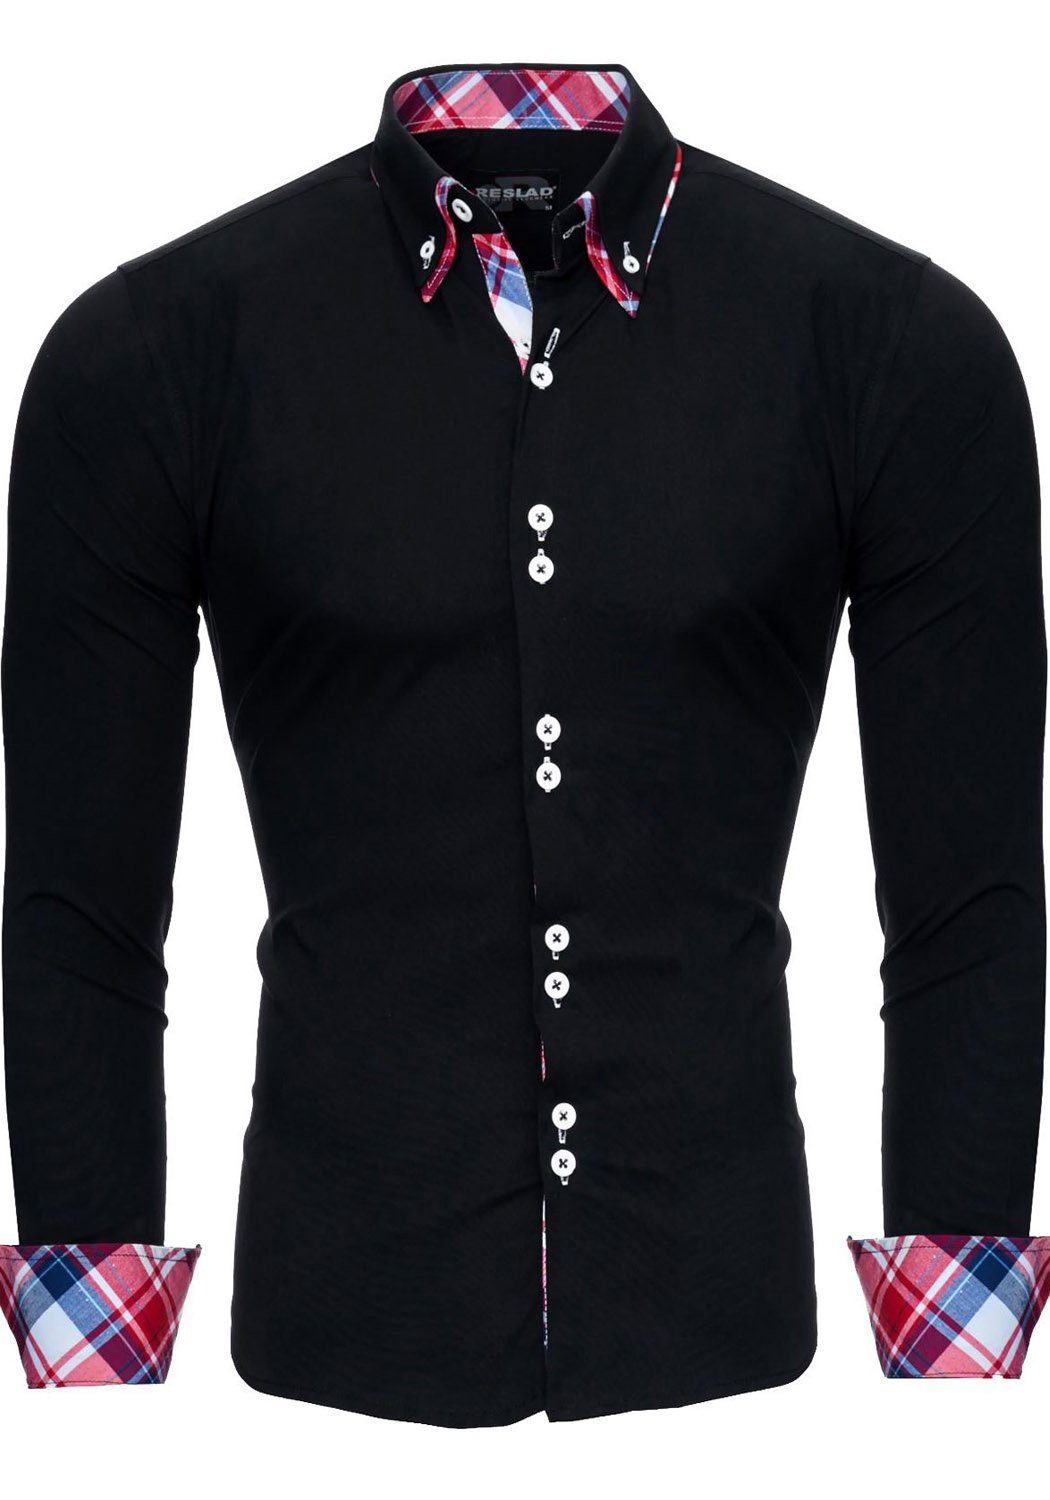 Reslad Langarmhemd »Reslad Herren Hemd Button-Down Slim Fit Kontrast« (Hemd)  Doppelkragen Kontrast Karo Muster Hemden